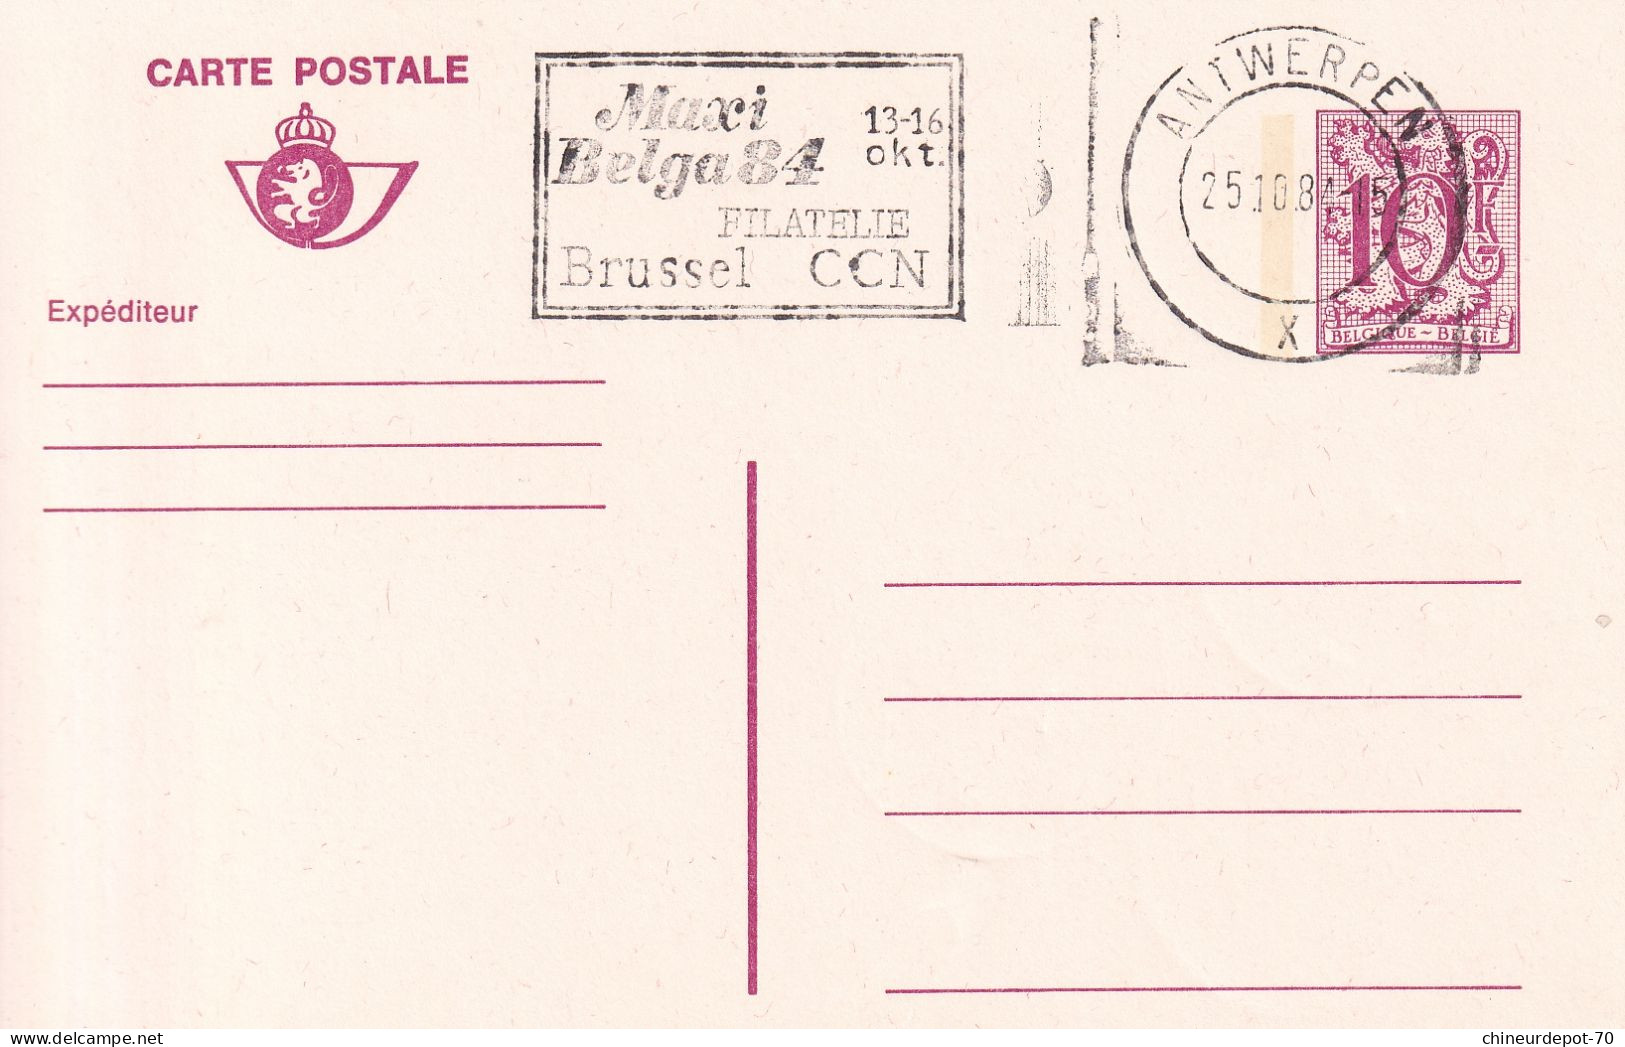 Lettres & Documents  Belgique België Belgium 1984 - Covers & Documents